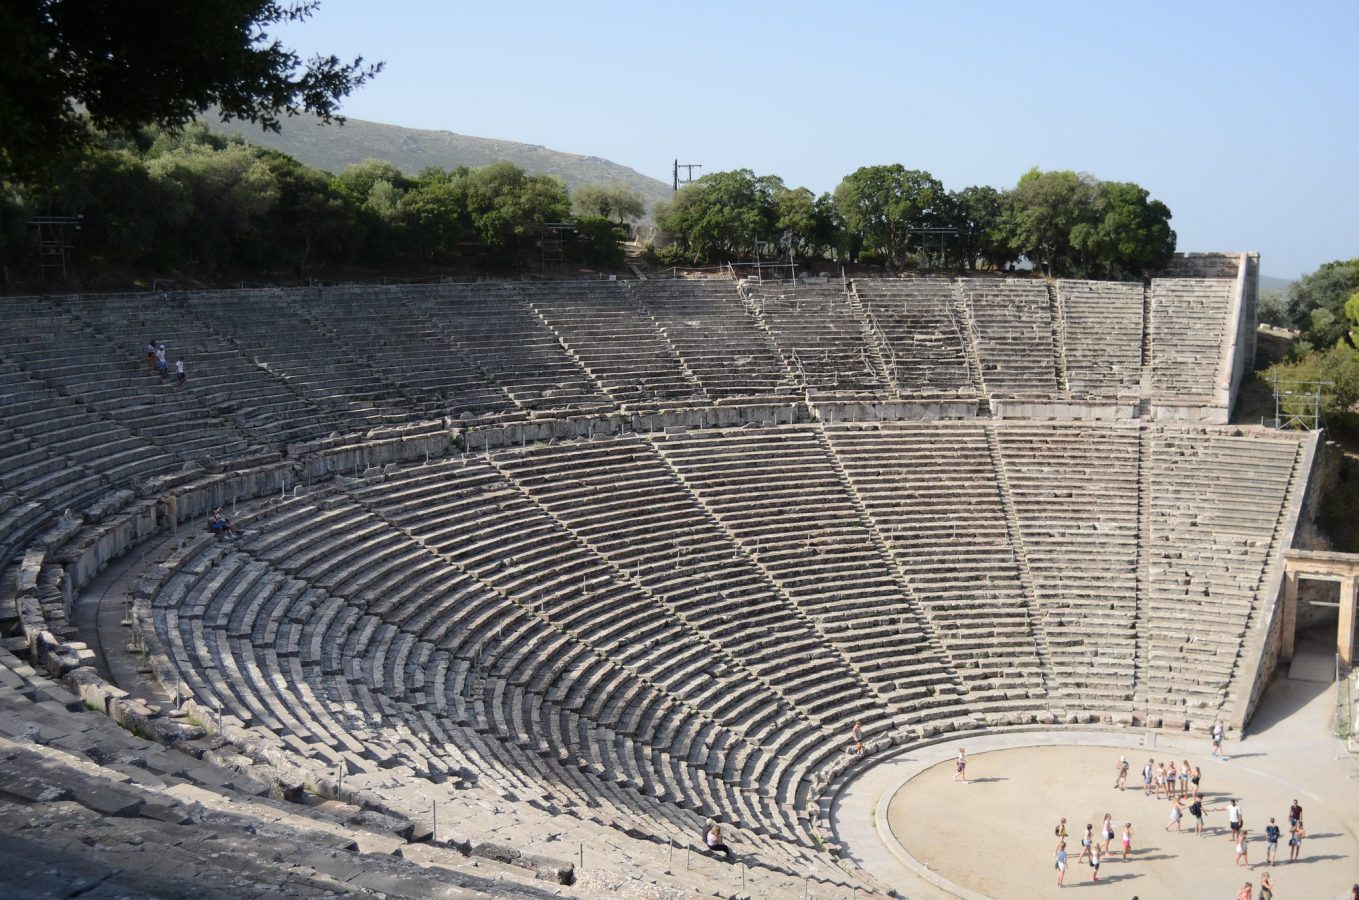 Ancient Theater of Epidaurus